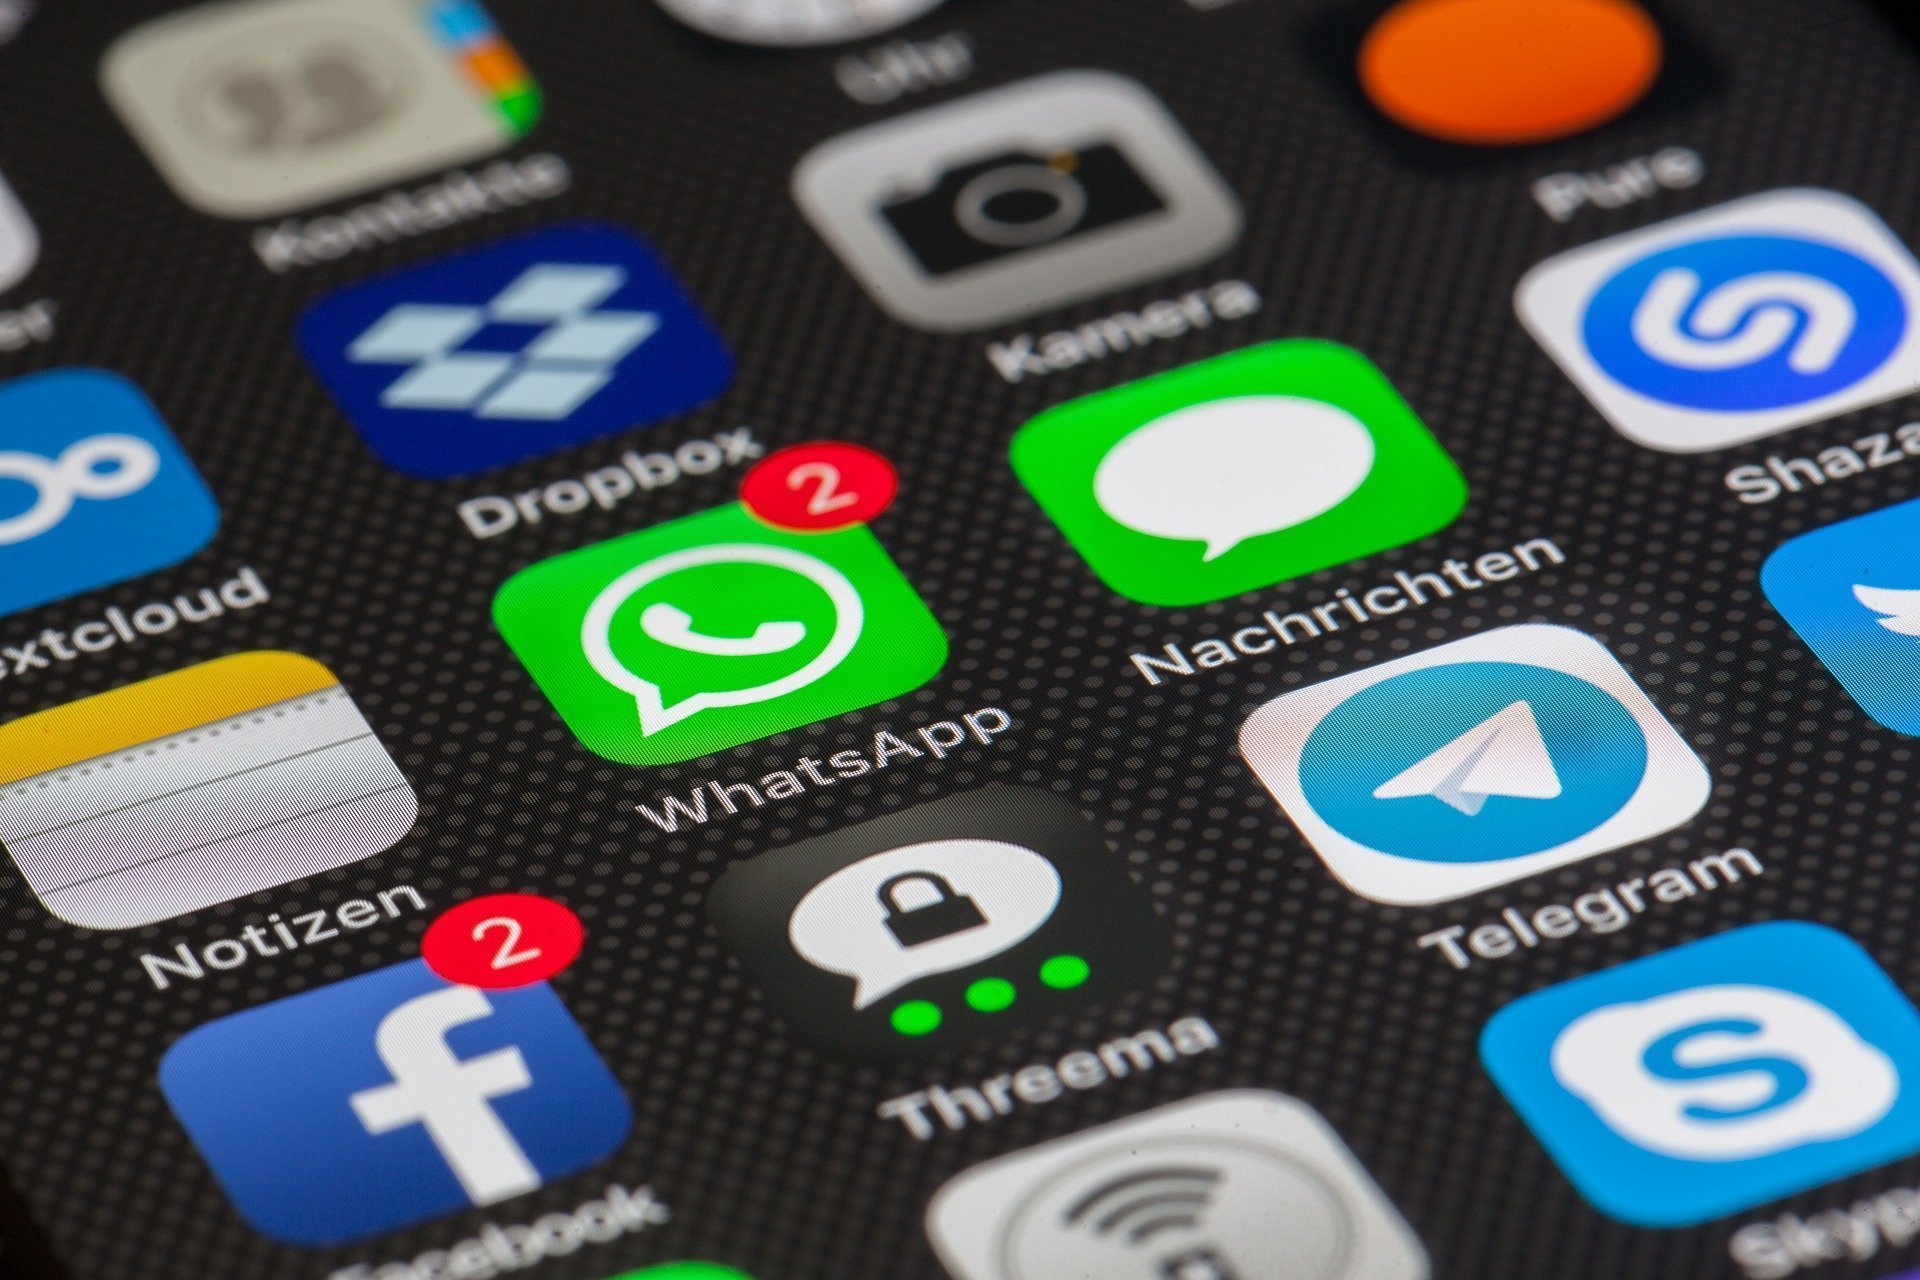 Plângere la Comisia Europeană împotriva regulilor impuse de aplicația WhatsApp